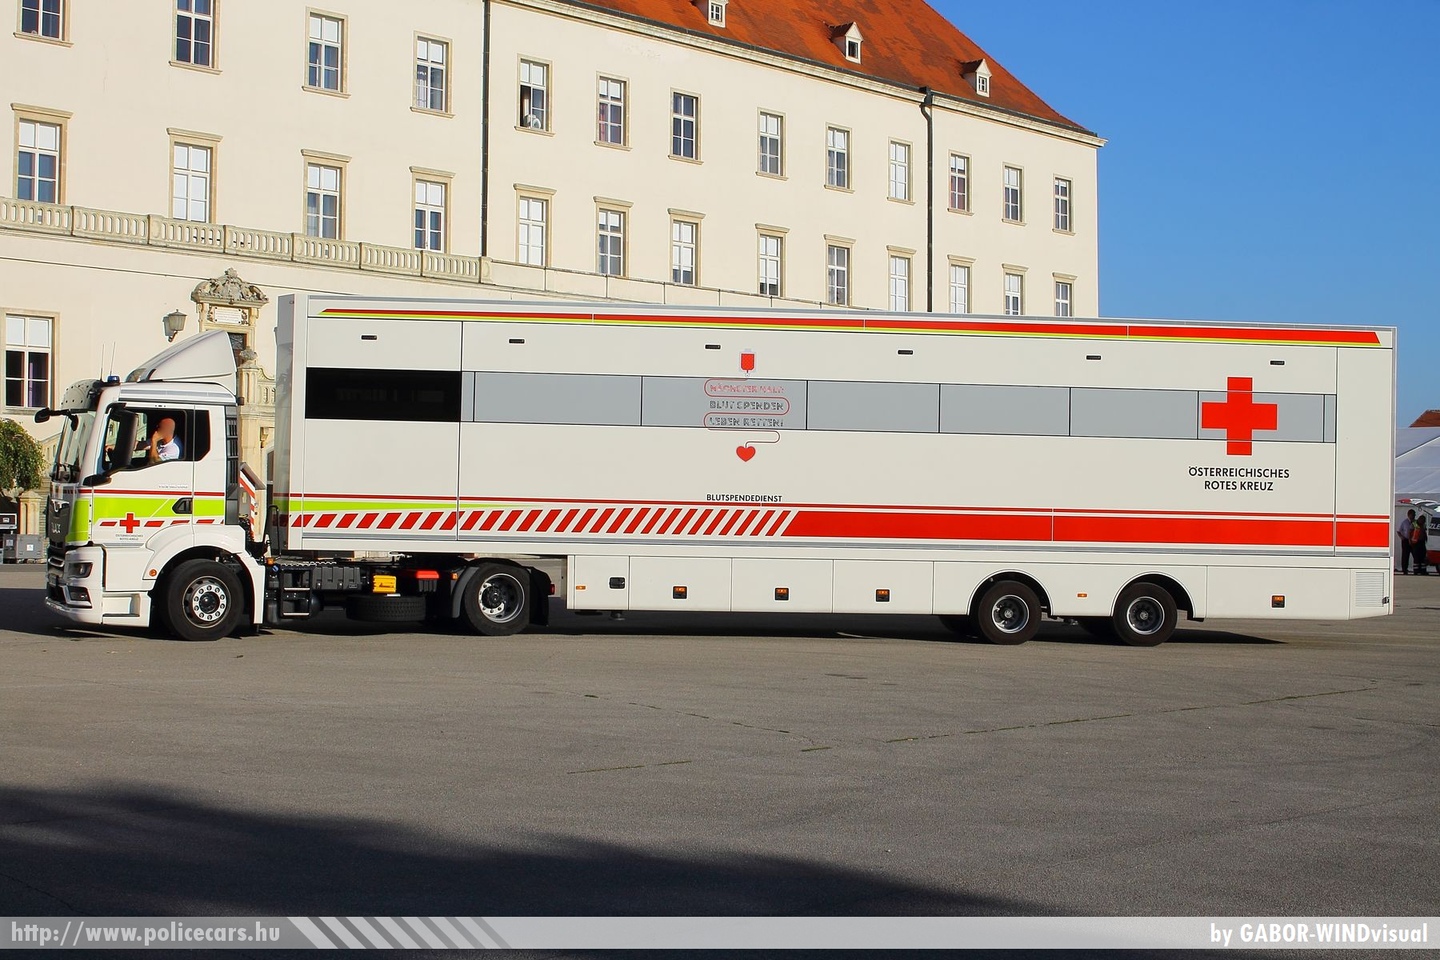 MAN TGS 18.400, Österreichisches Rotes Kreuz, KARL, fotó: GABOR-WINDvisual
Keywords: osztrák Ausztria mentő mentőautó ambulance austrian Austria